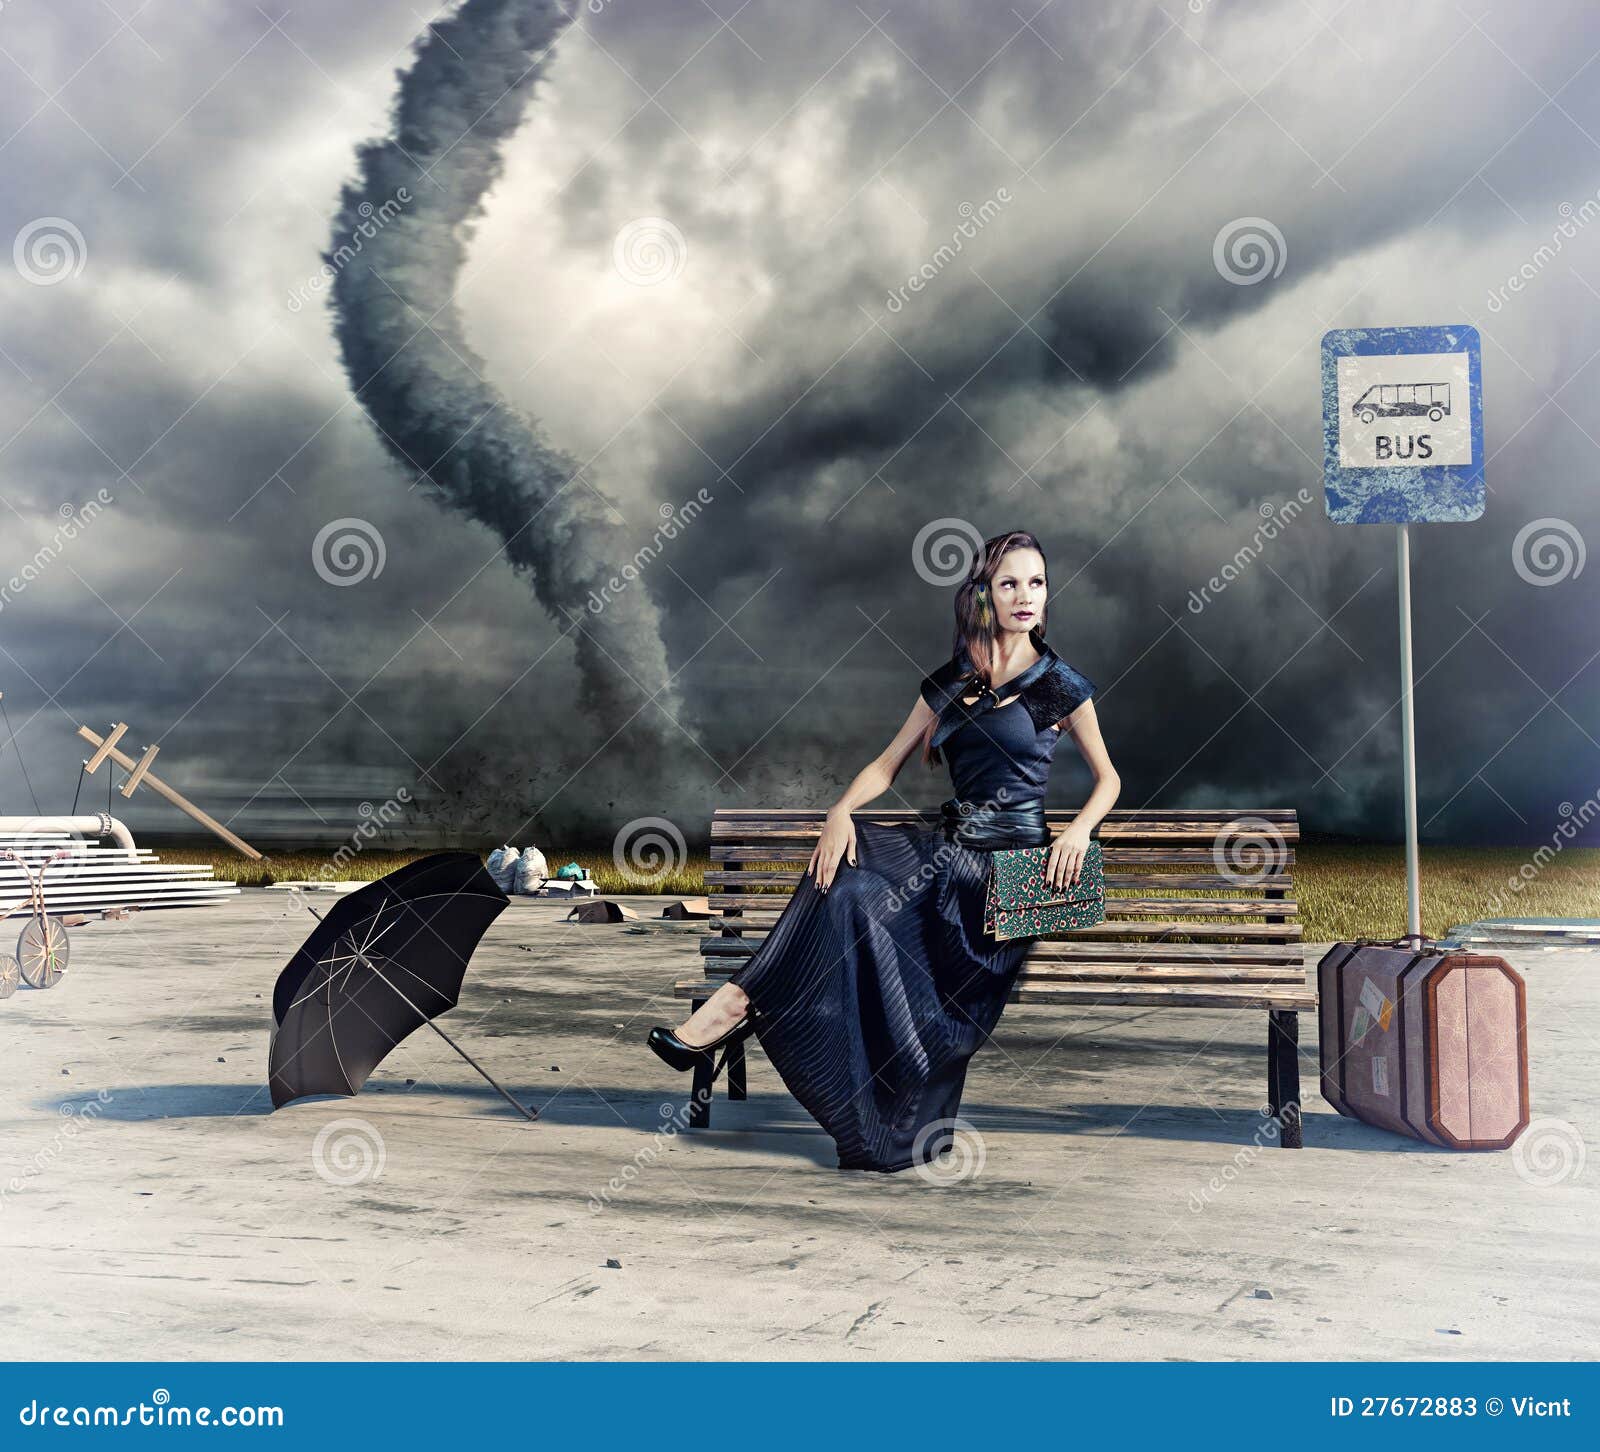 woman-tornado-27672883.jpg